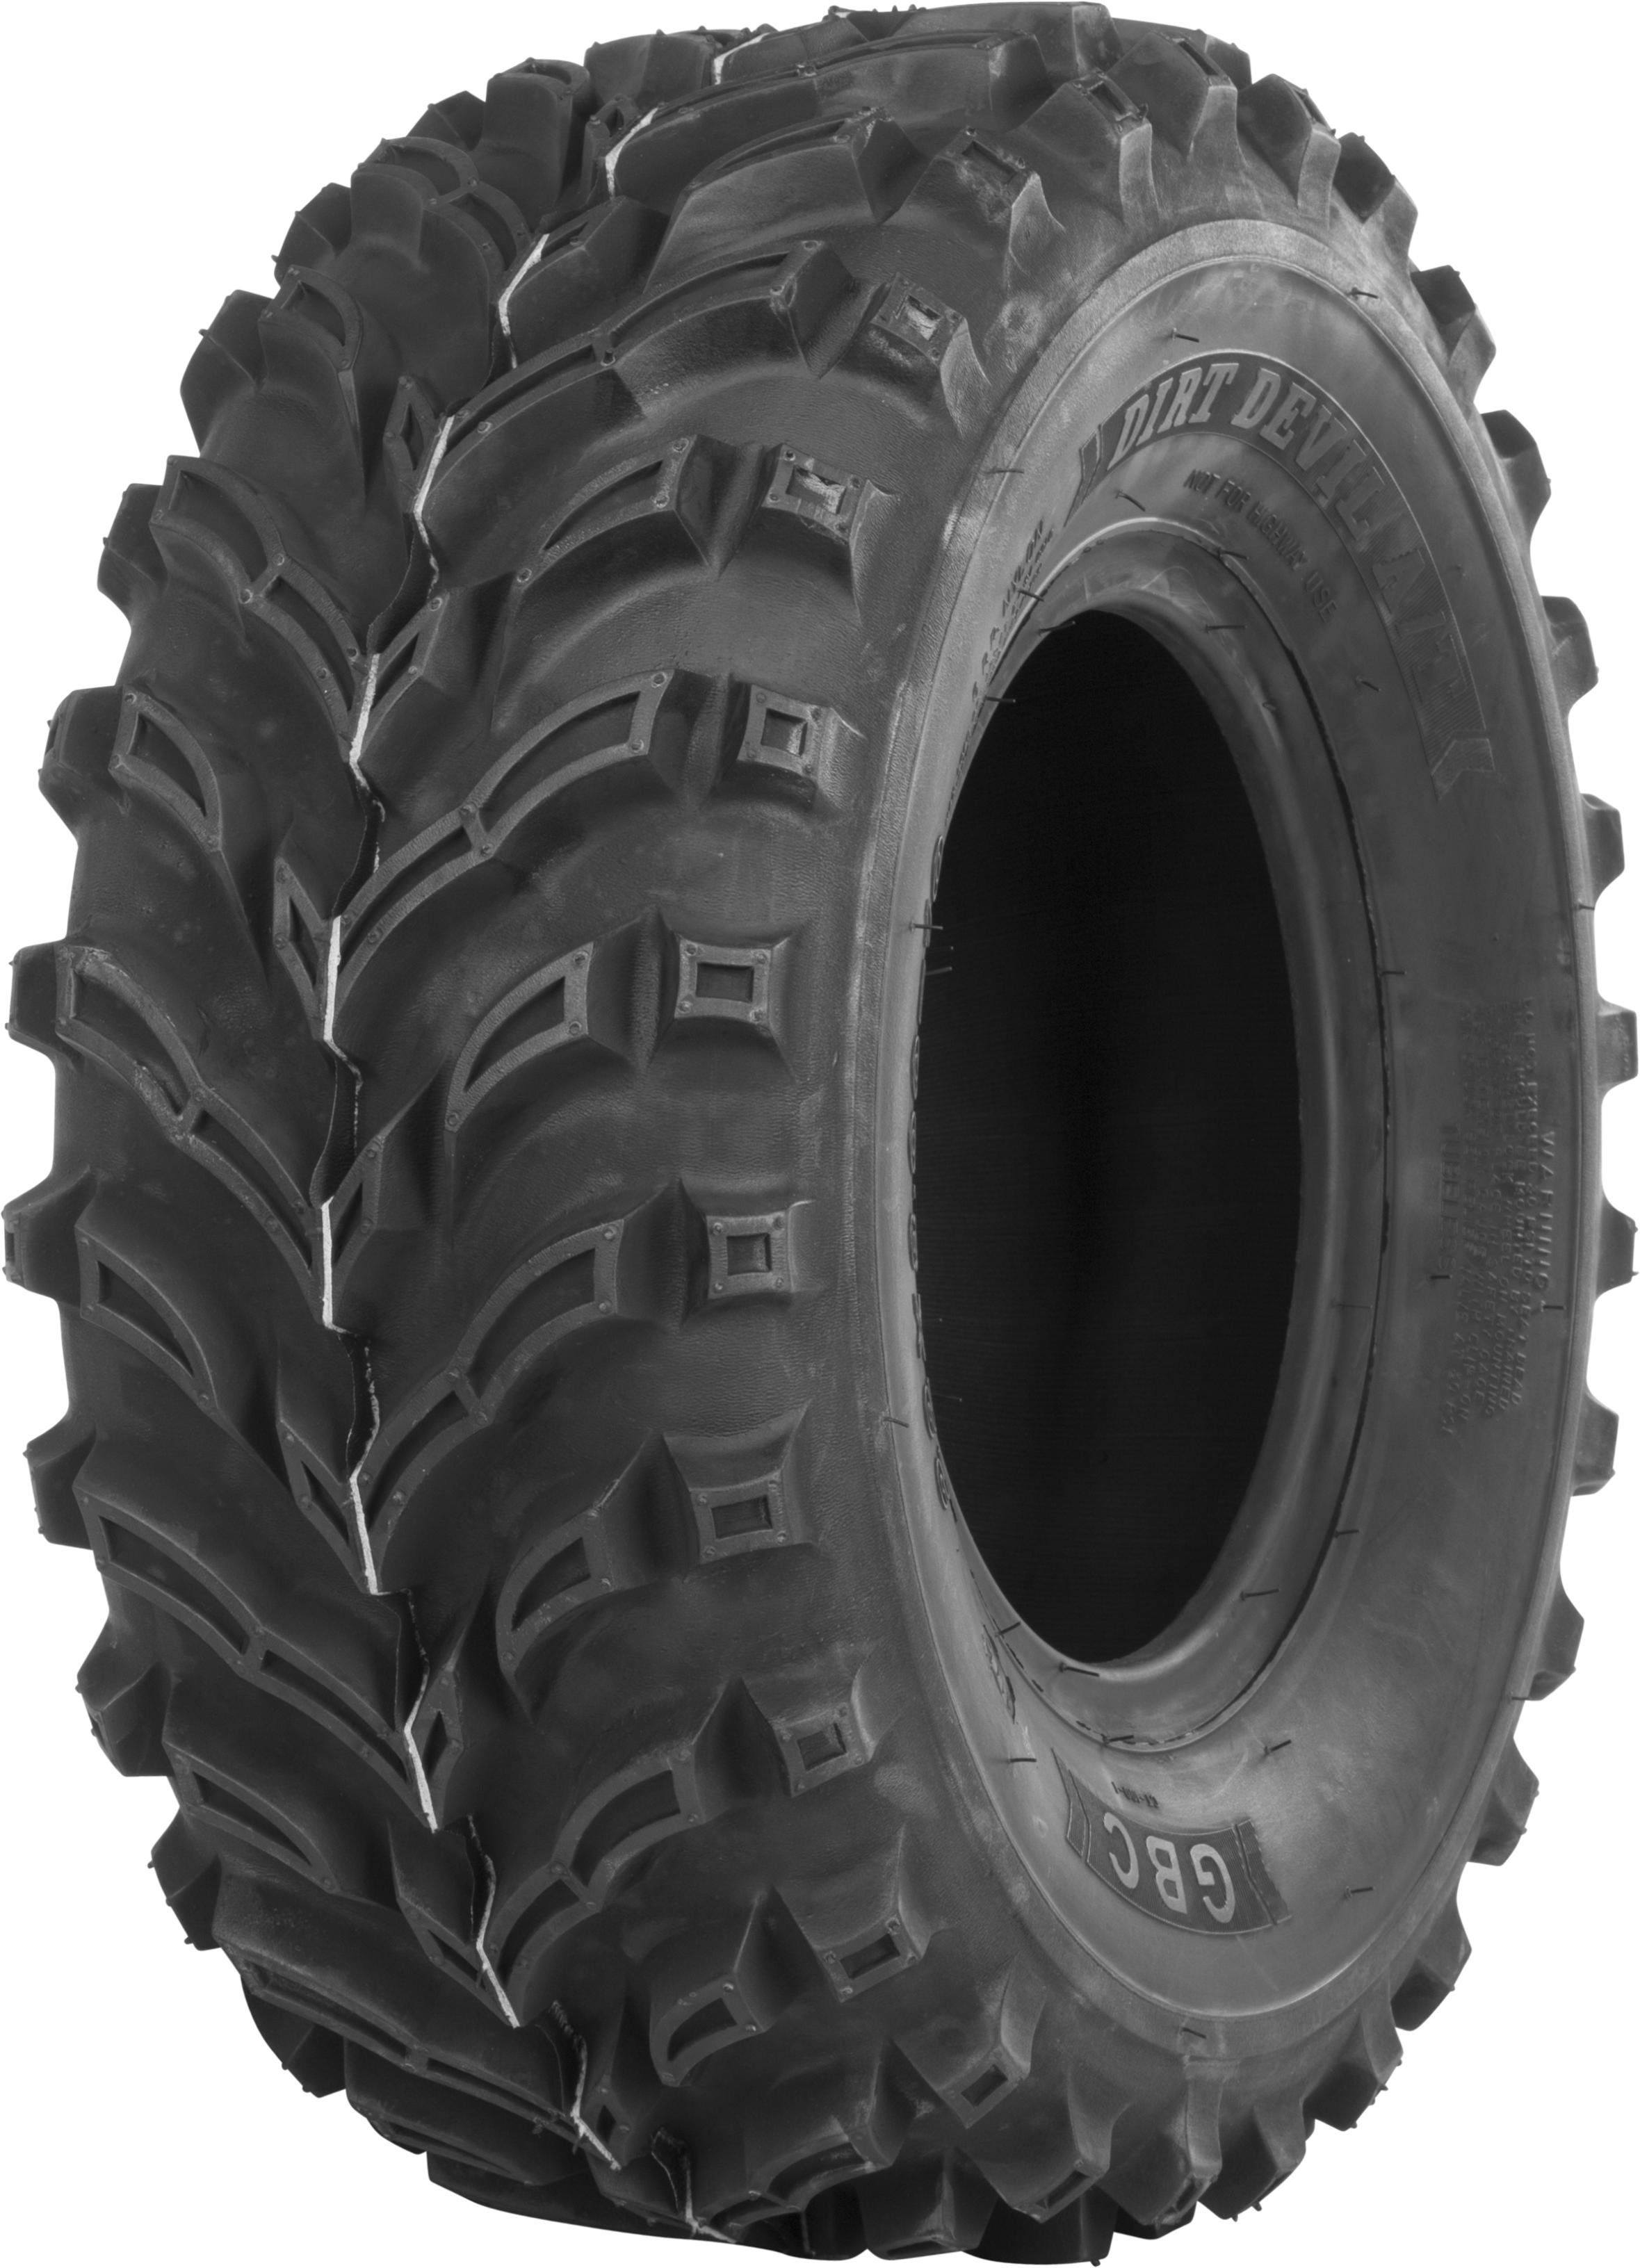 Gbc - Tire Dirt Devil A/t Rear 24x10-11 Bias Lr-395lbs - AR1161